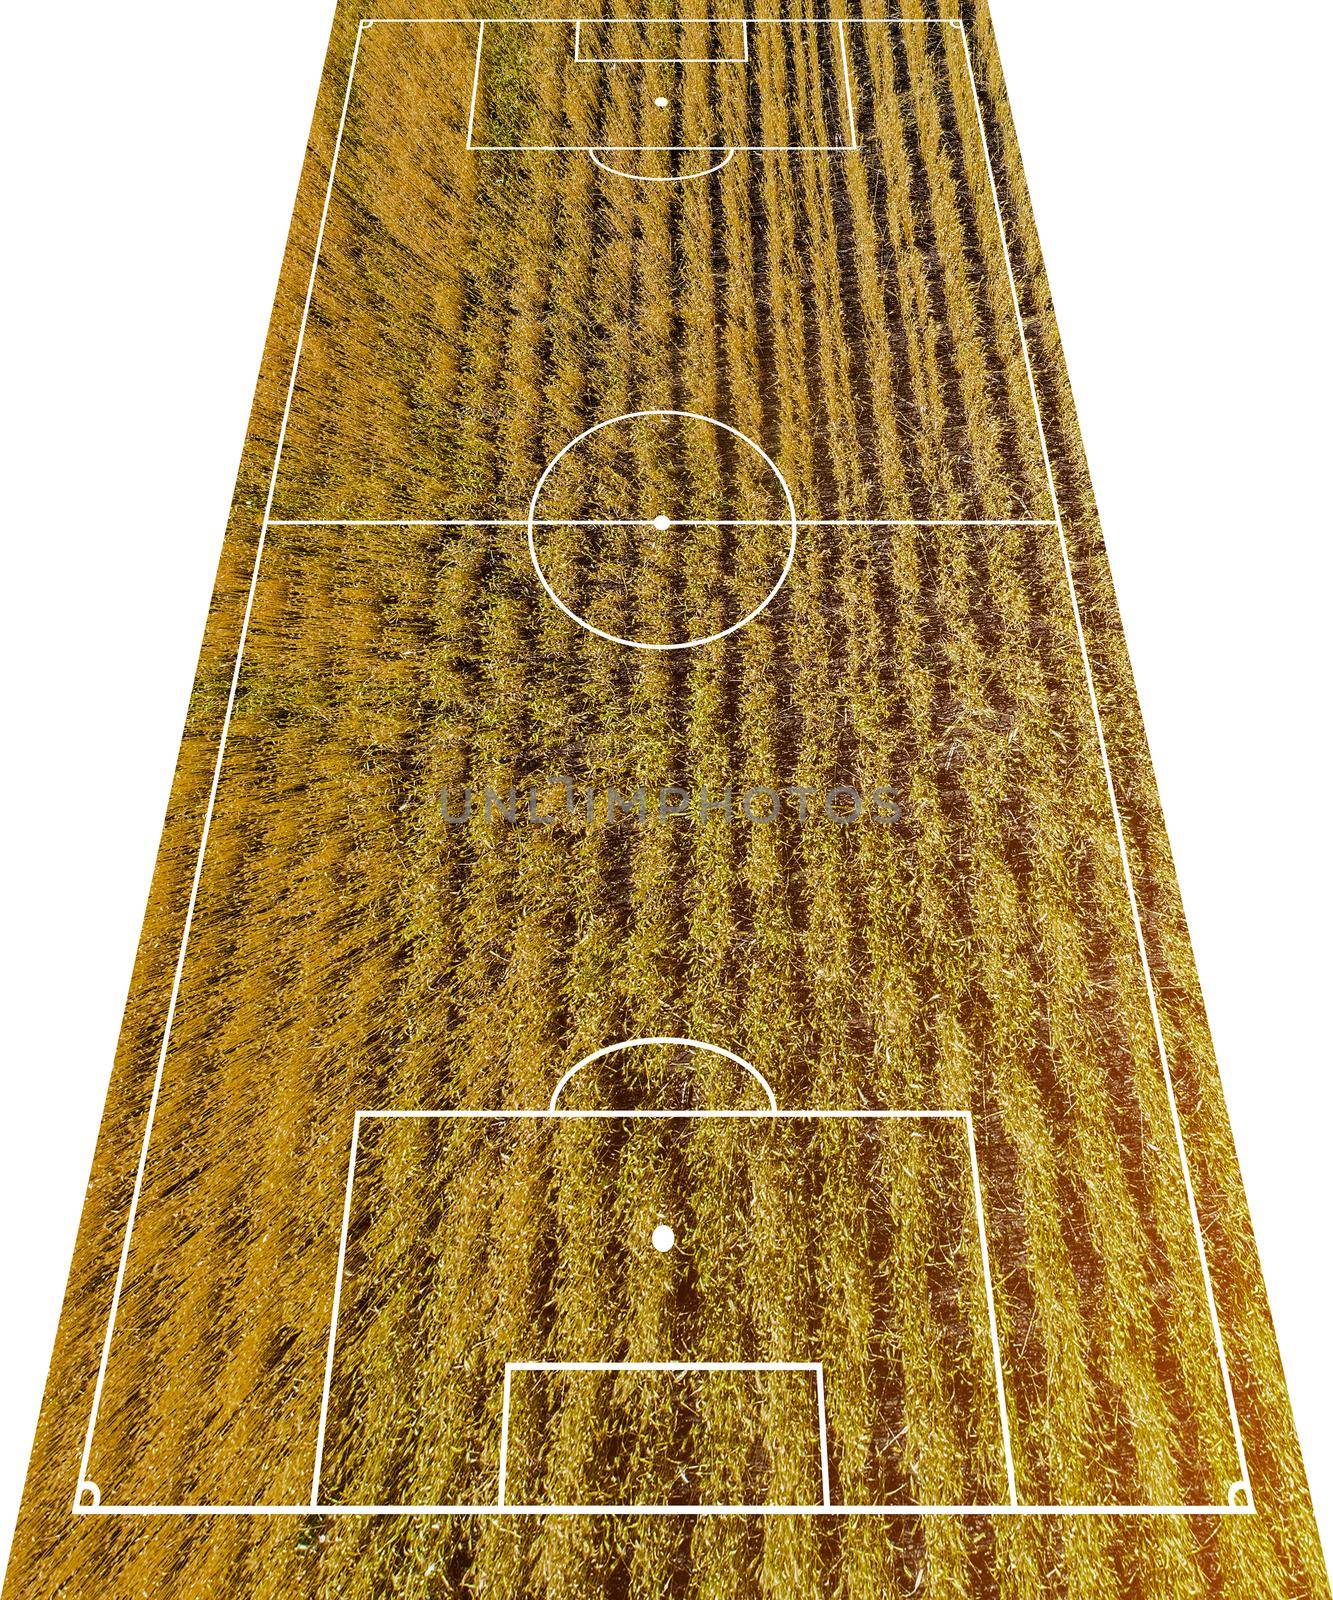 Football field concept by GekaSkr